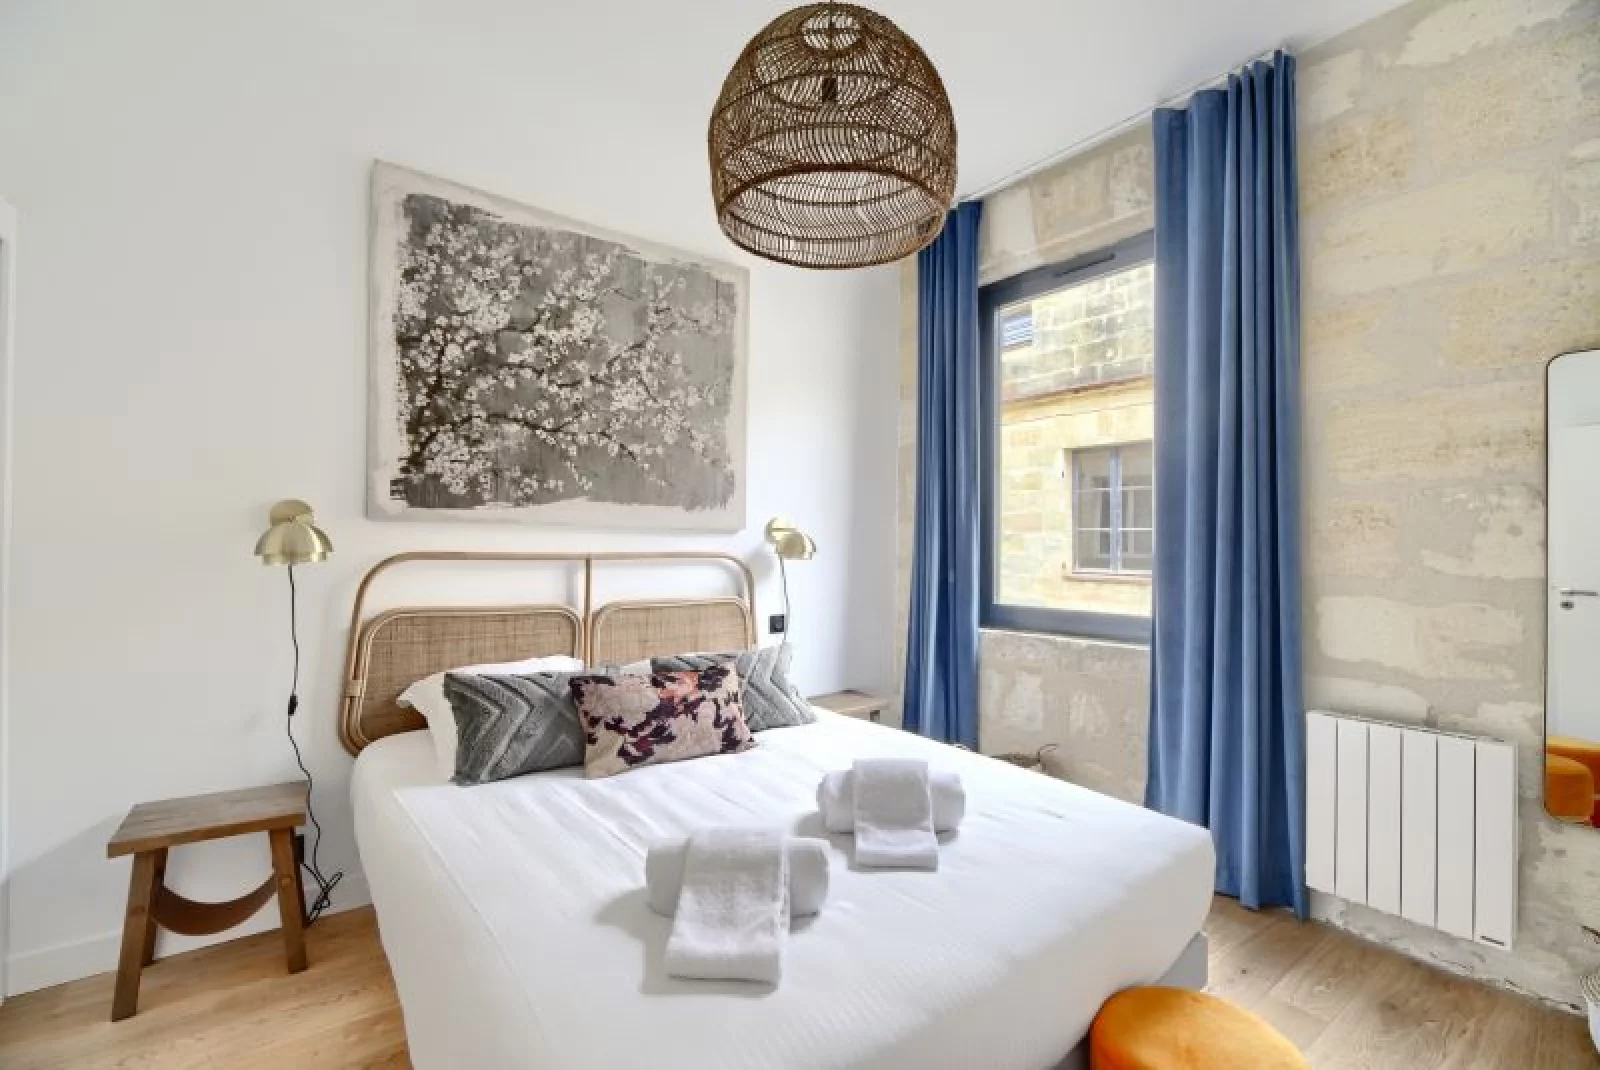 Location appartement 2 pièces meublé 48m² (Bordeaux - Chartrons)